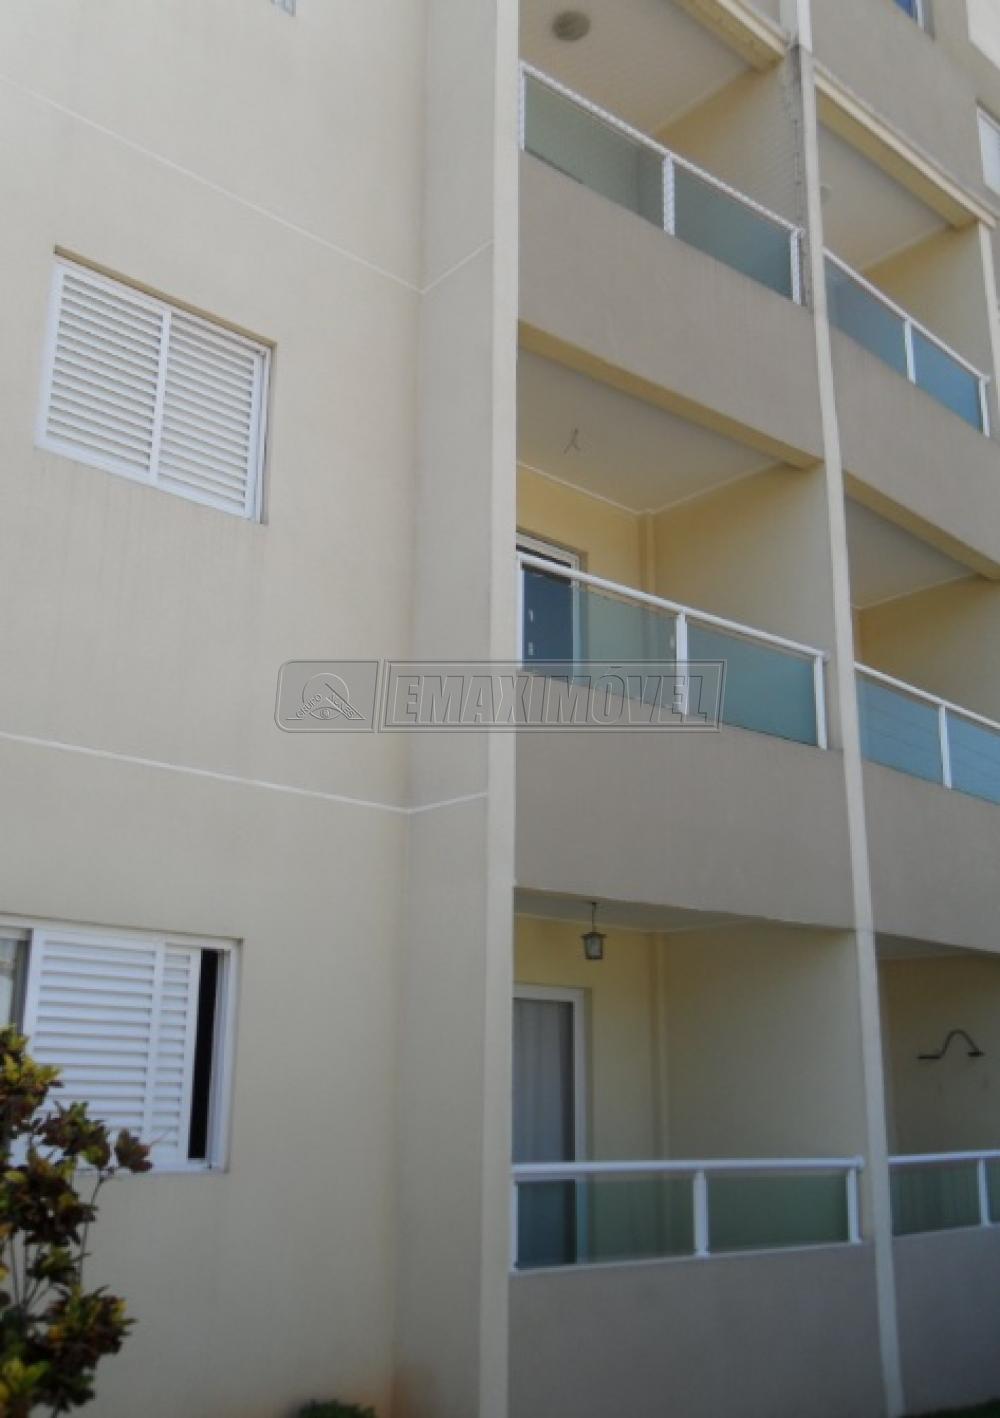 Alugar Apartamento / Padrão em Sorocaba R$ 900,00 - Foto 5